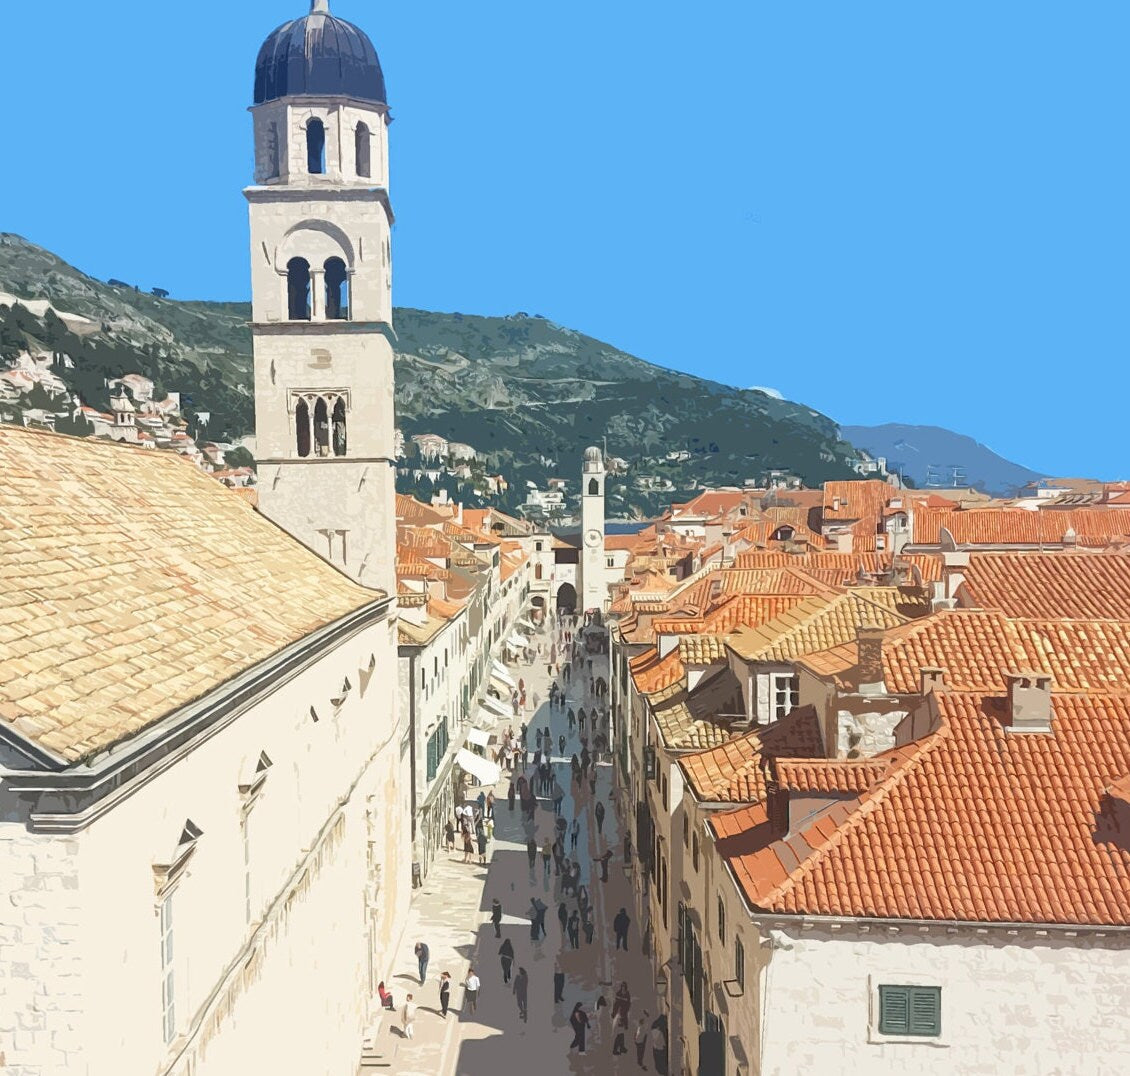 Dubrovnik Travel Poster